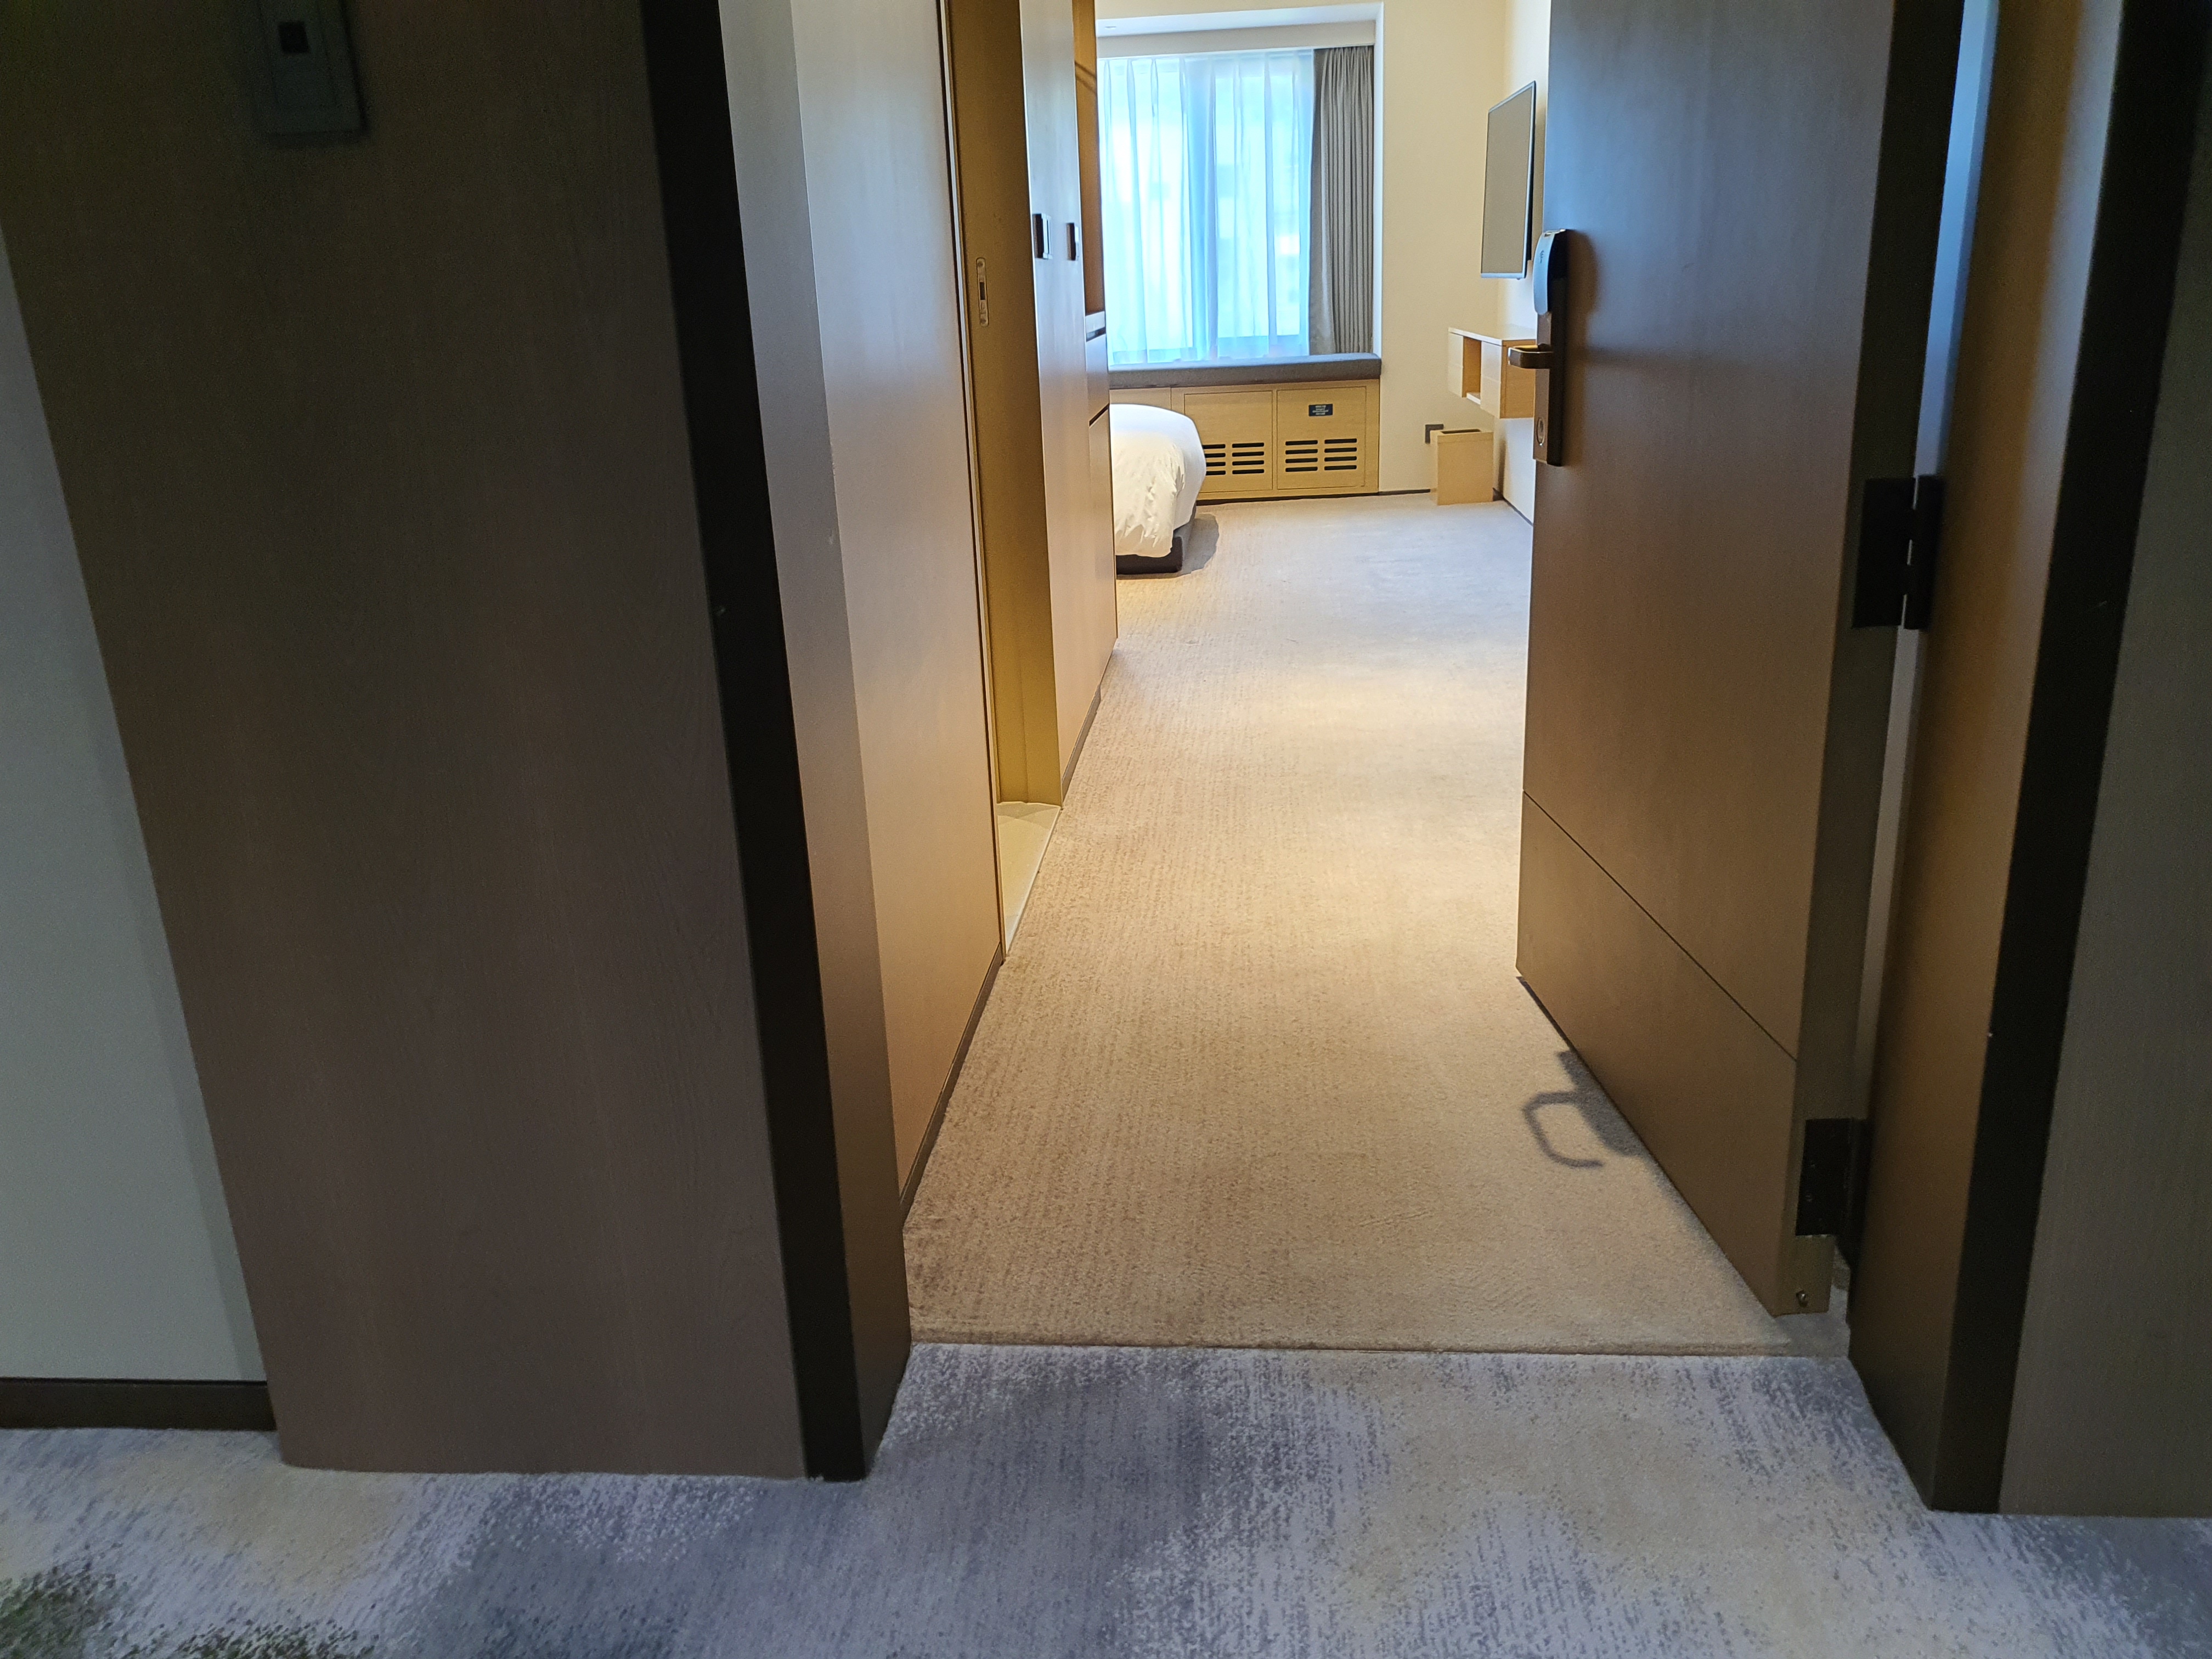 Doorway0 : The doorway of the accessible guest room